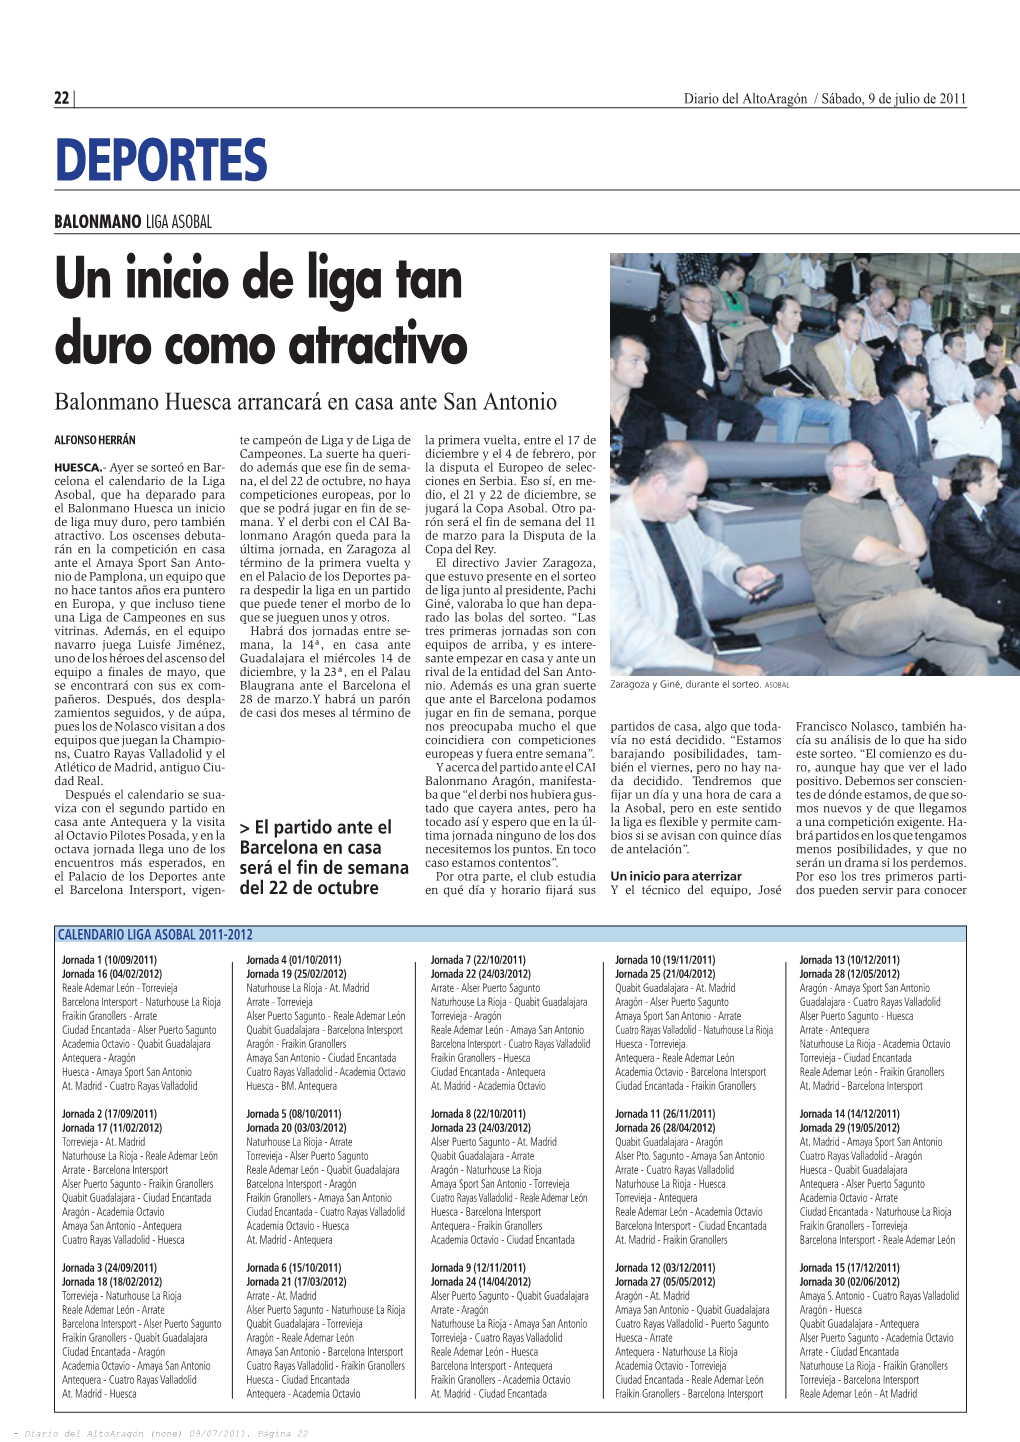 Diario Del Altoaragón / Sábado, 9 De Julio De 2011 Deportes